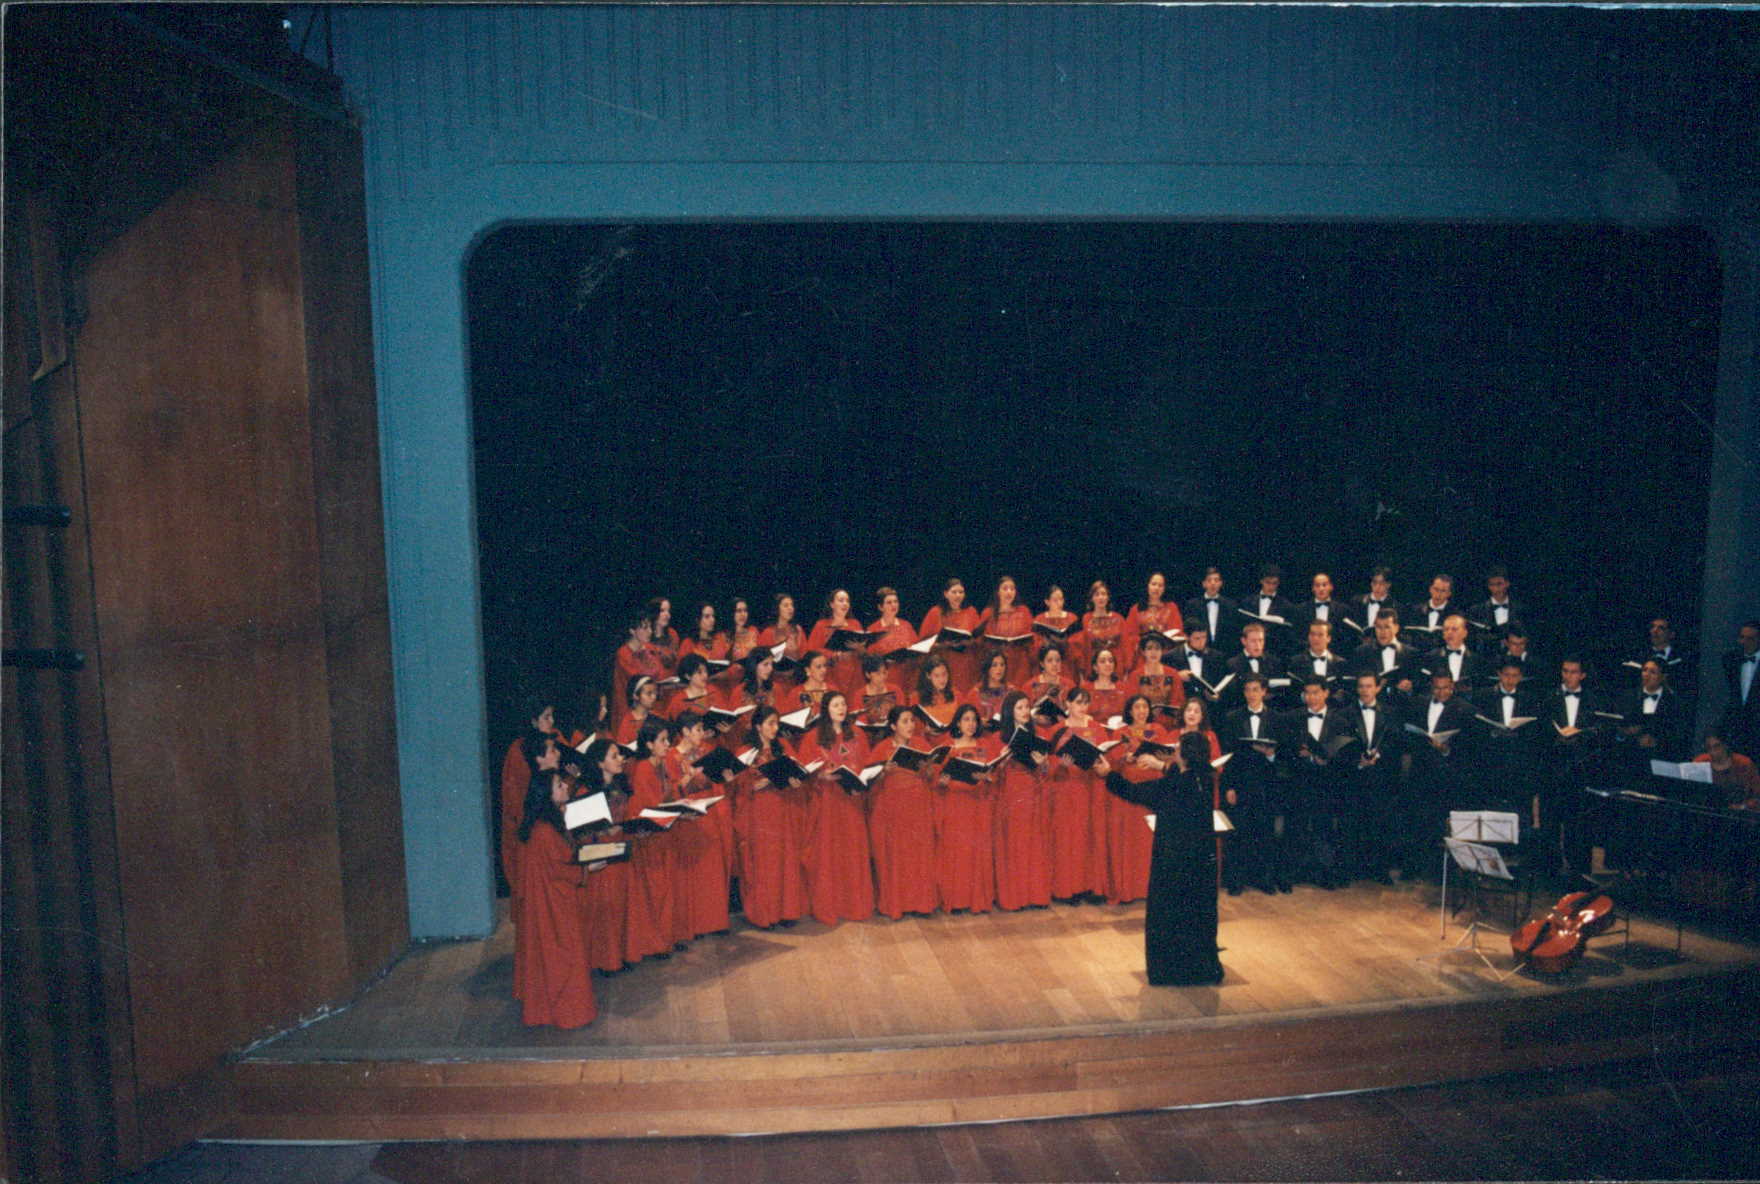 Coro de la Universidad de los Andes